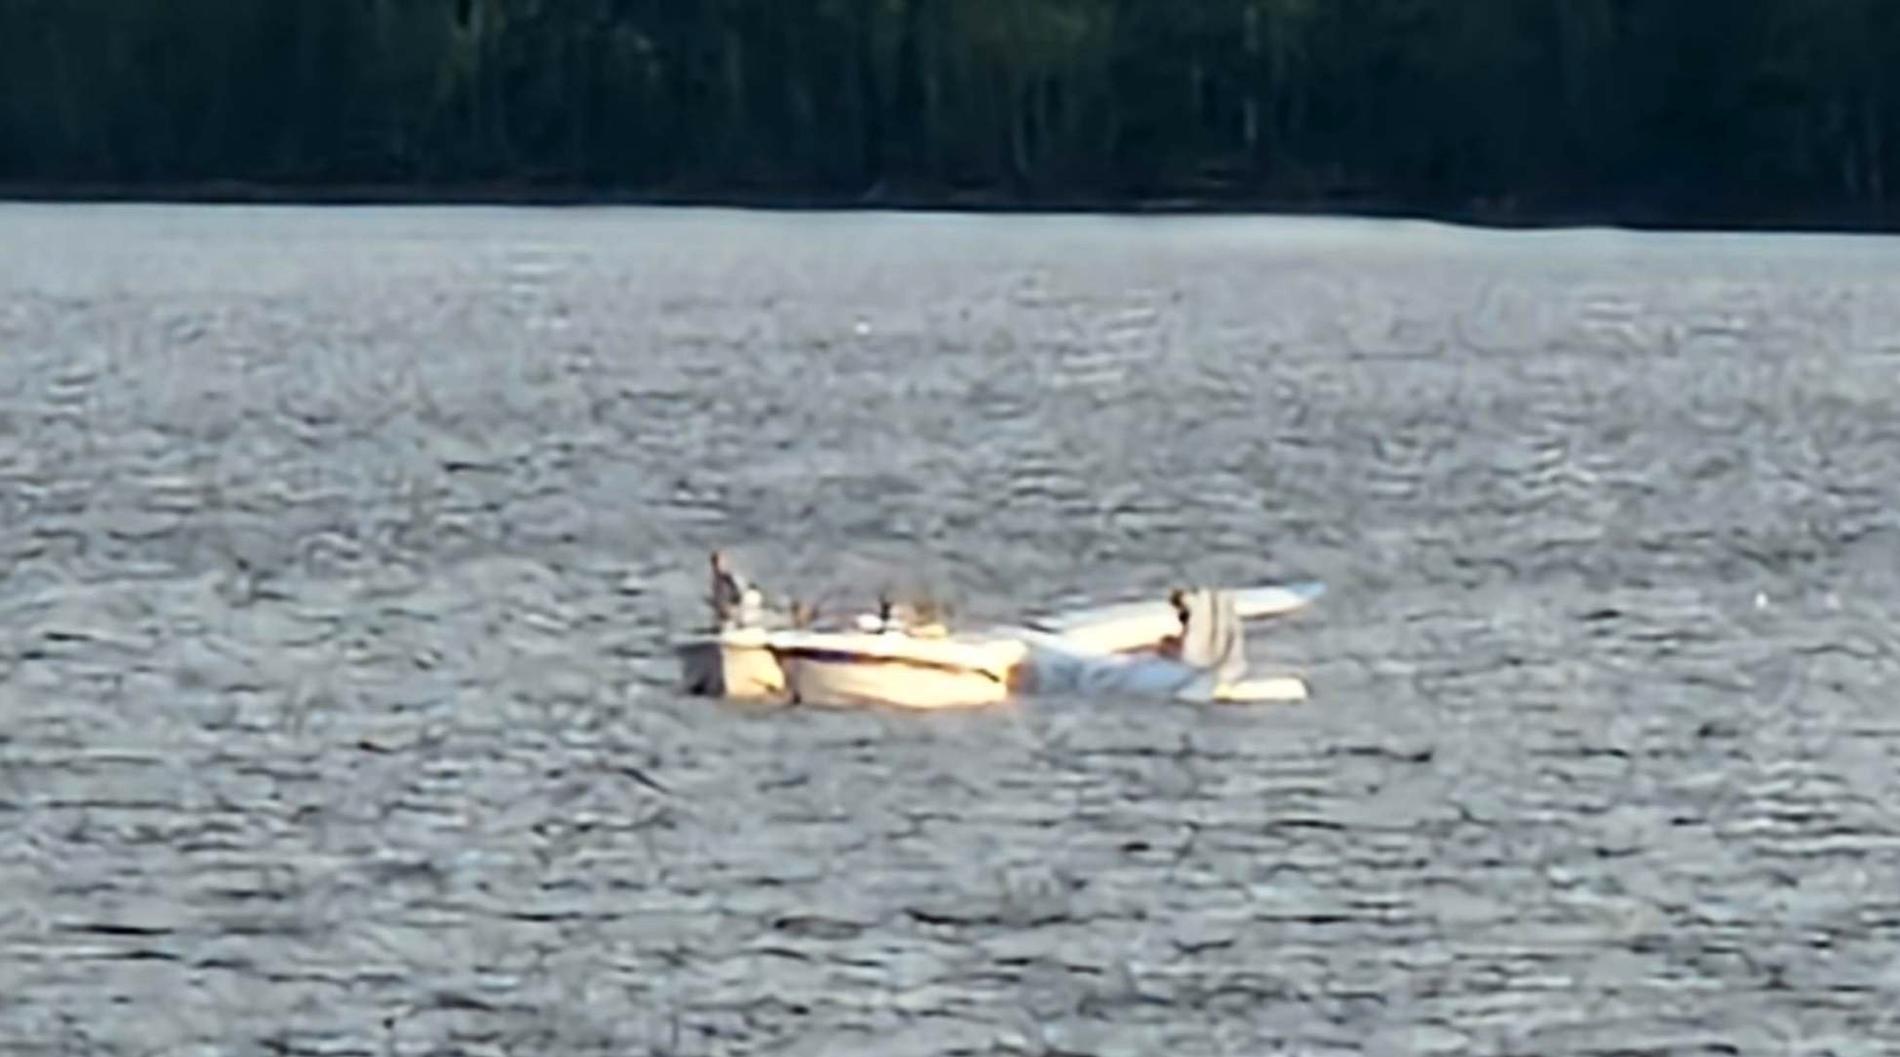 Flygplanet kraschade i sjön och på Livs bild ser man passagerarna sitta på vingarna.